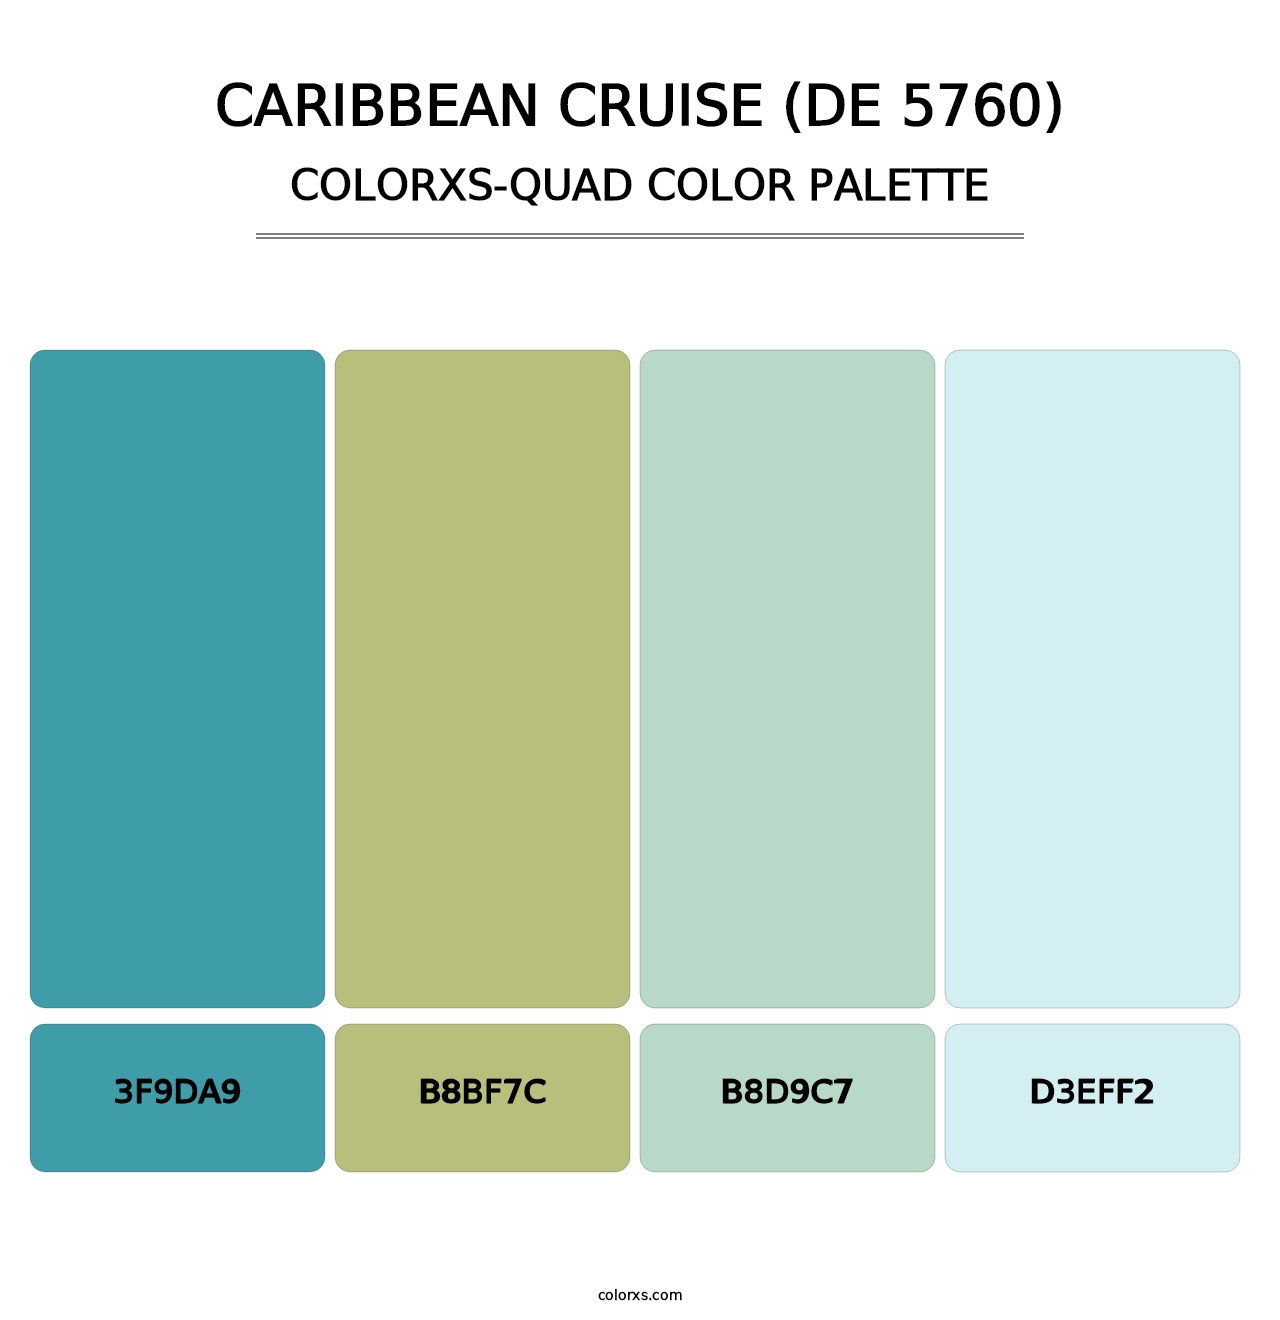 Caribbean Cruise (DE 5760) - Colorxs Quad Palette